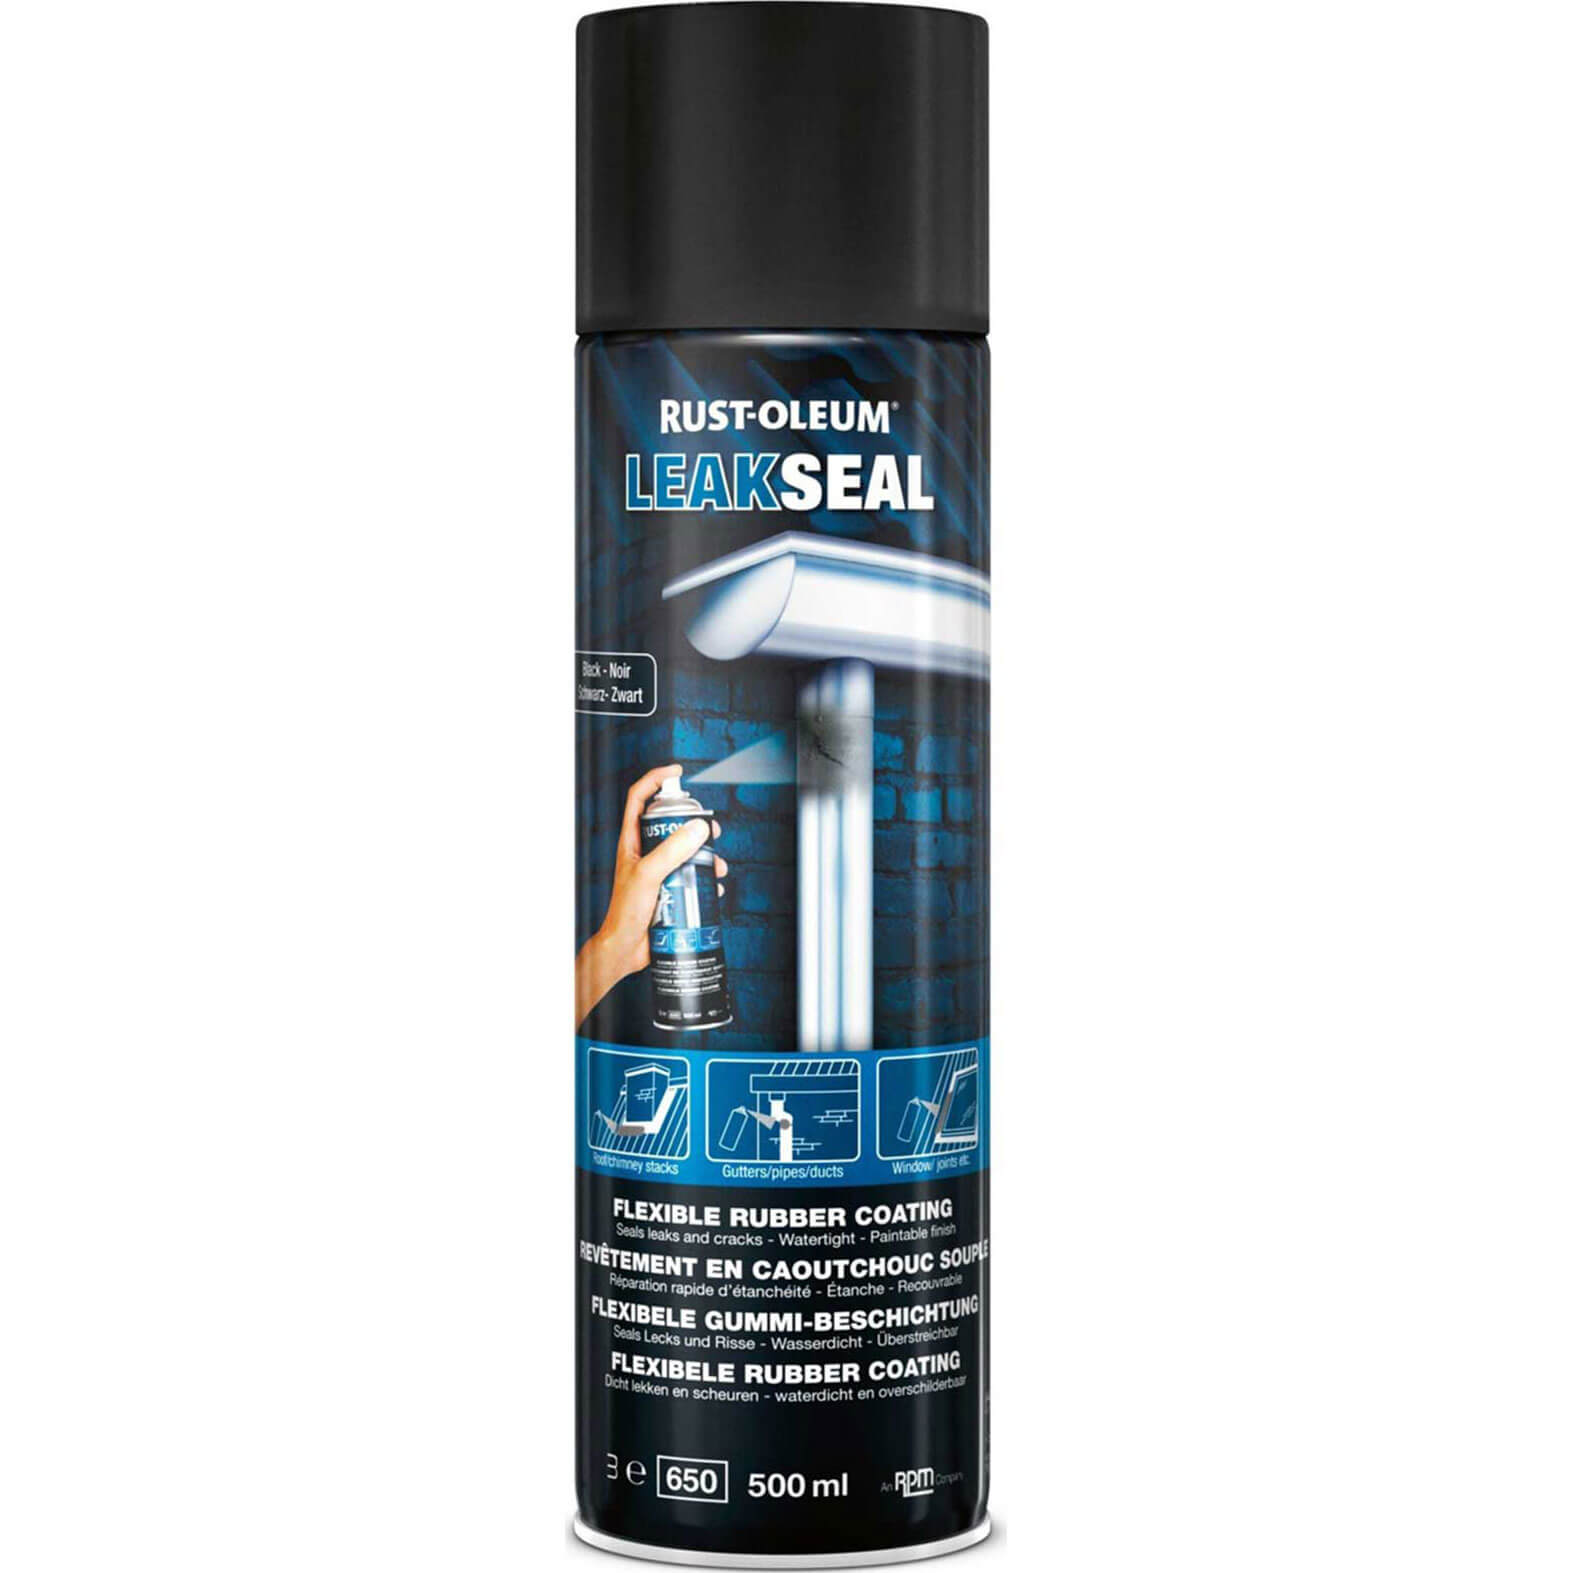 Image of Rust Oleum Leak Seal Spray Paint Black 500ml